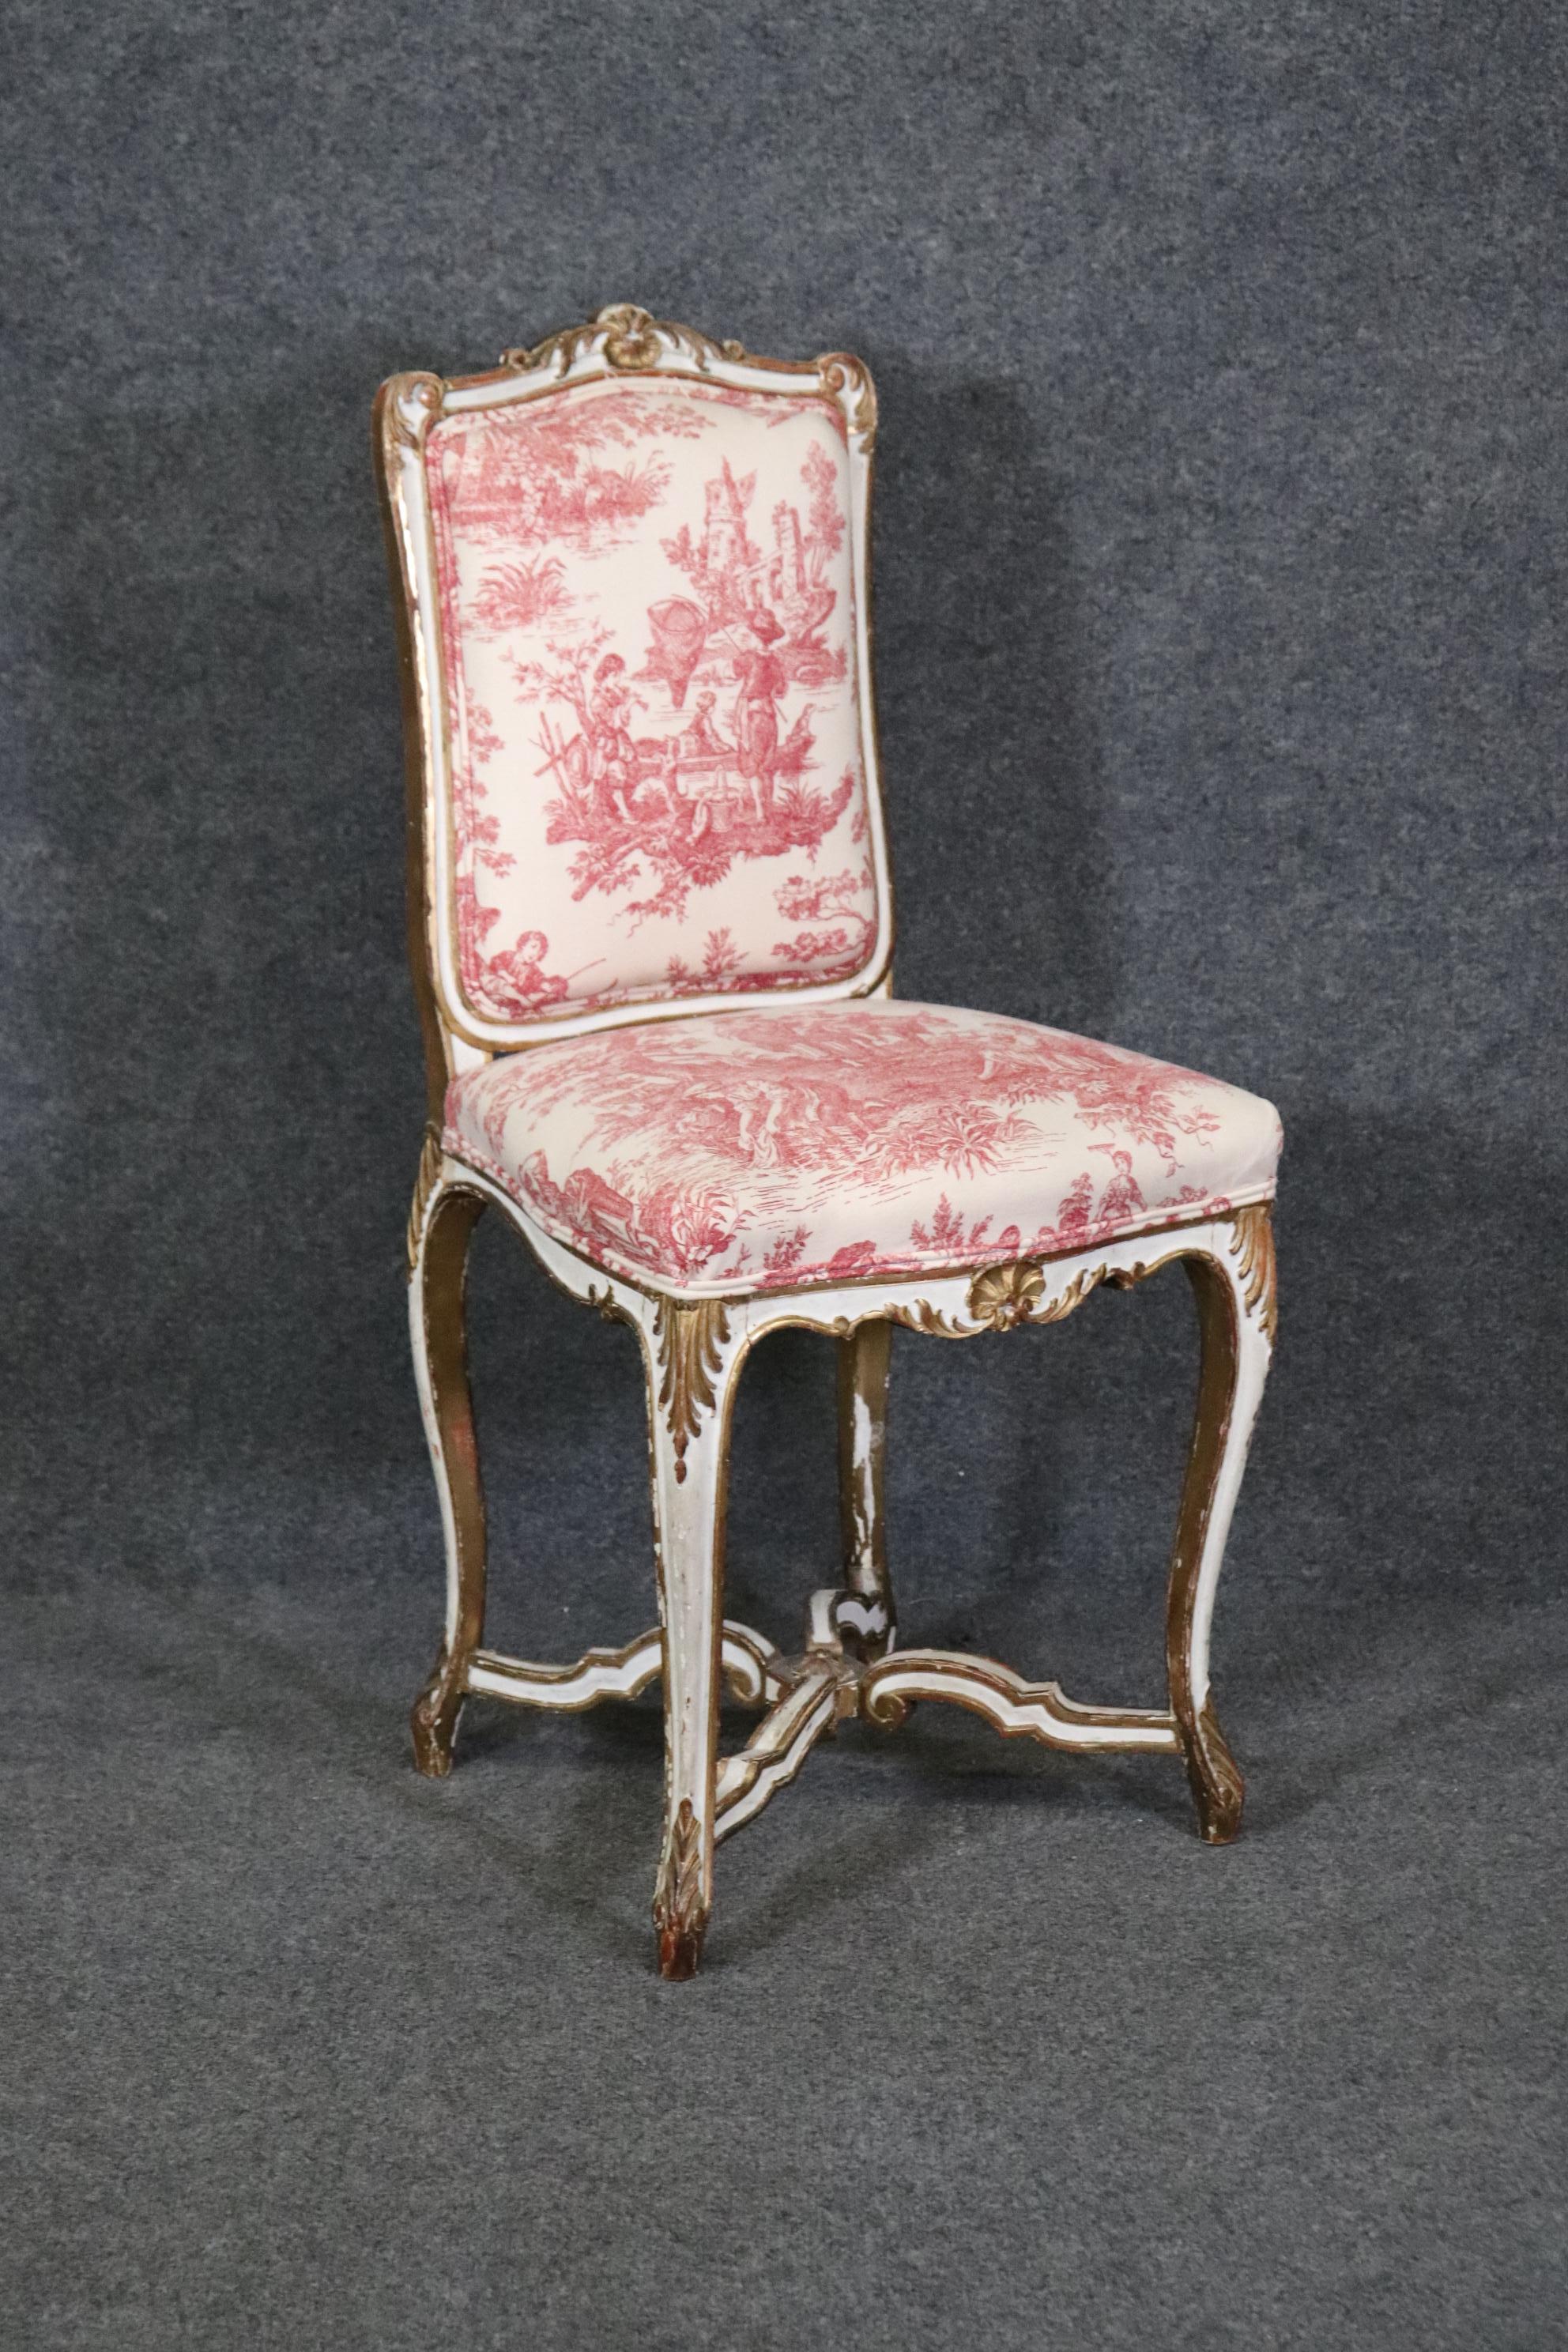 Dimensions - H : 36 1/4in W : 17 3/4in D : 16in SH : 20in 

Cette chaise de bureau antique de style Louis XV est fabriquée dans la plus haute qualité et est parfaite pour vous et votre maison ! Si vous regardez les photos fournies, vous voyez la